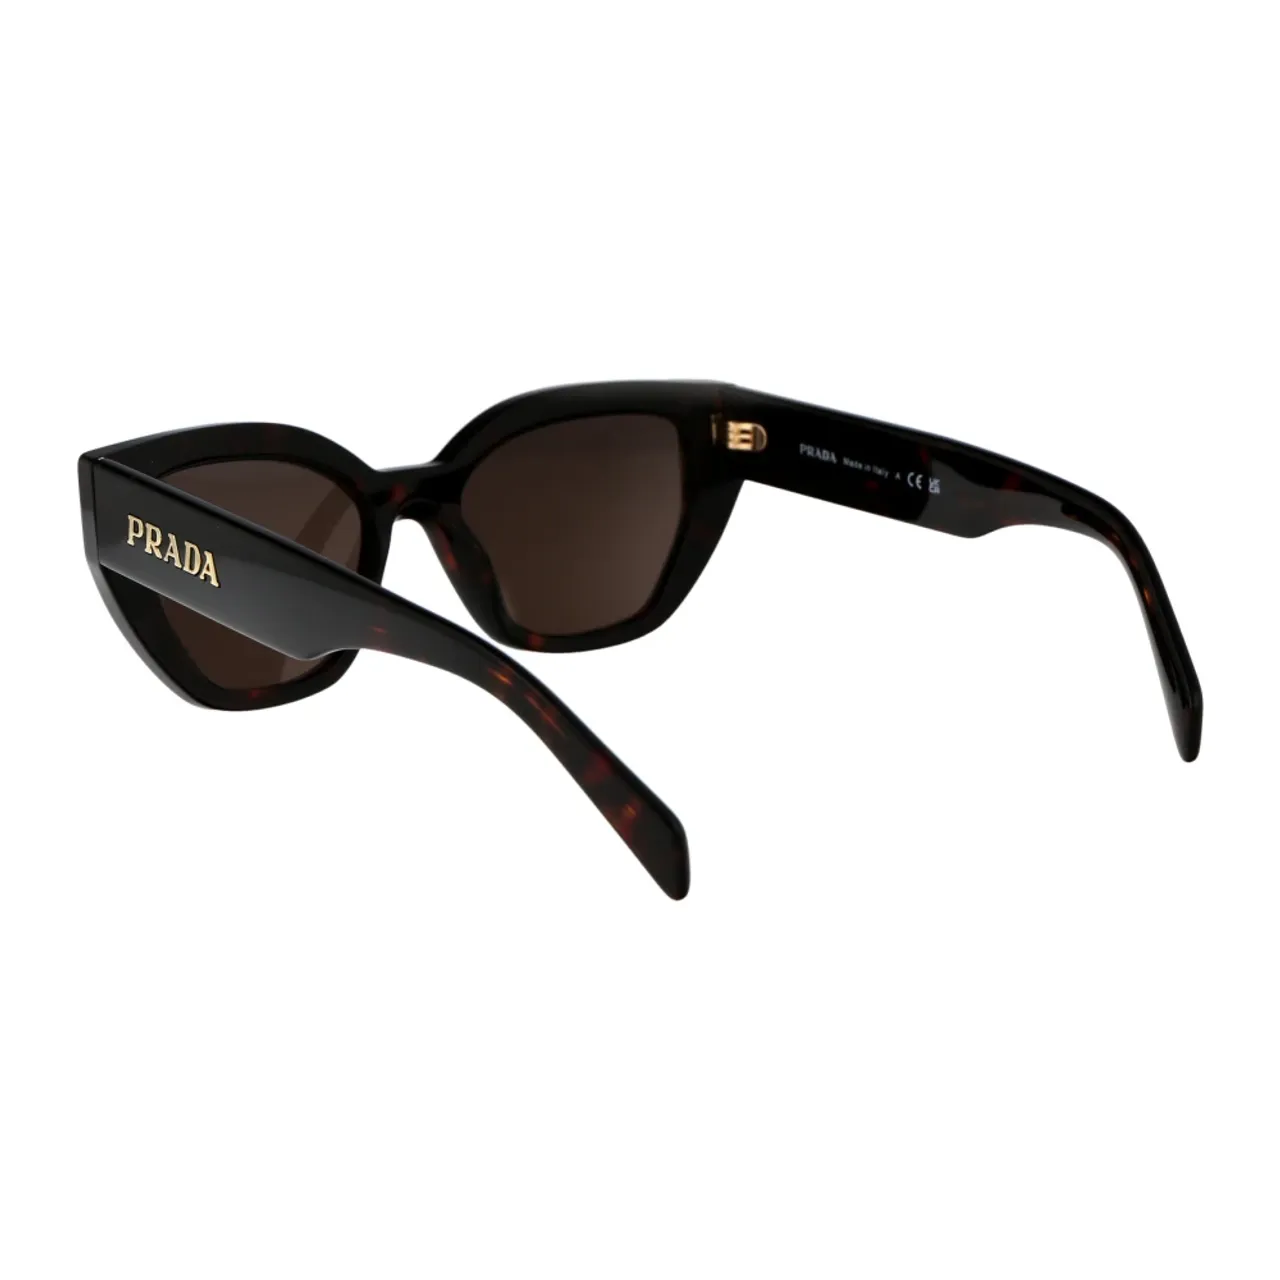 Stylische Sonnenbrille mit Einzigartigem Design Prada